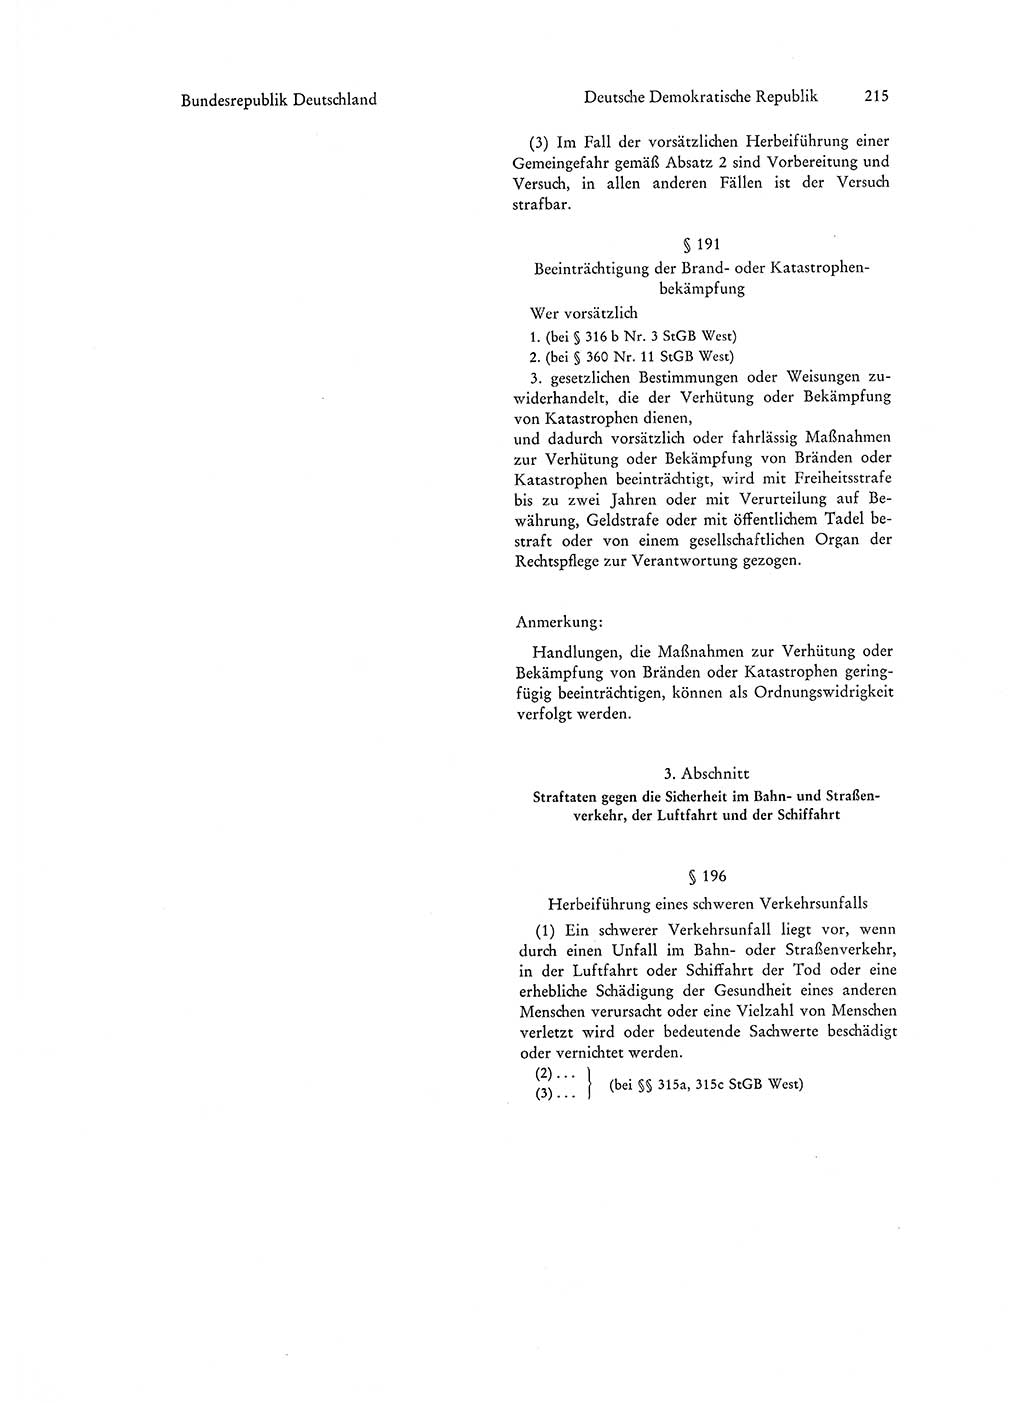 Strafgesetzgebung in Deutschland [Bundesrepublik Deutschland (BRD) und Deutsche Demokratische Republik (DDR)] 1972, Seite 215 (Str.-Ges. Dtl. StGB BRD DDR 1972, S. 215)